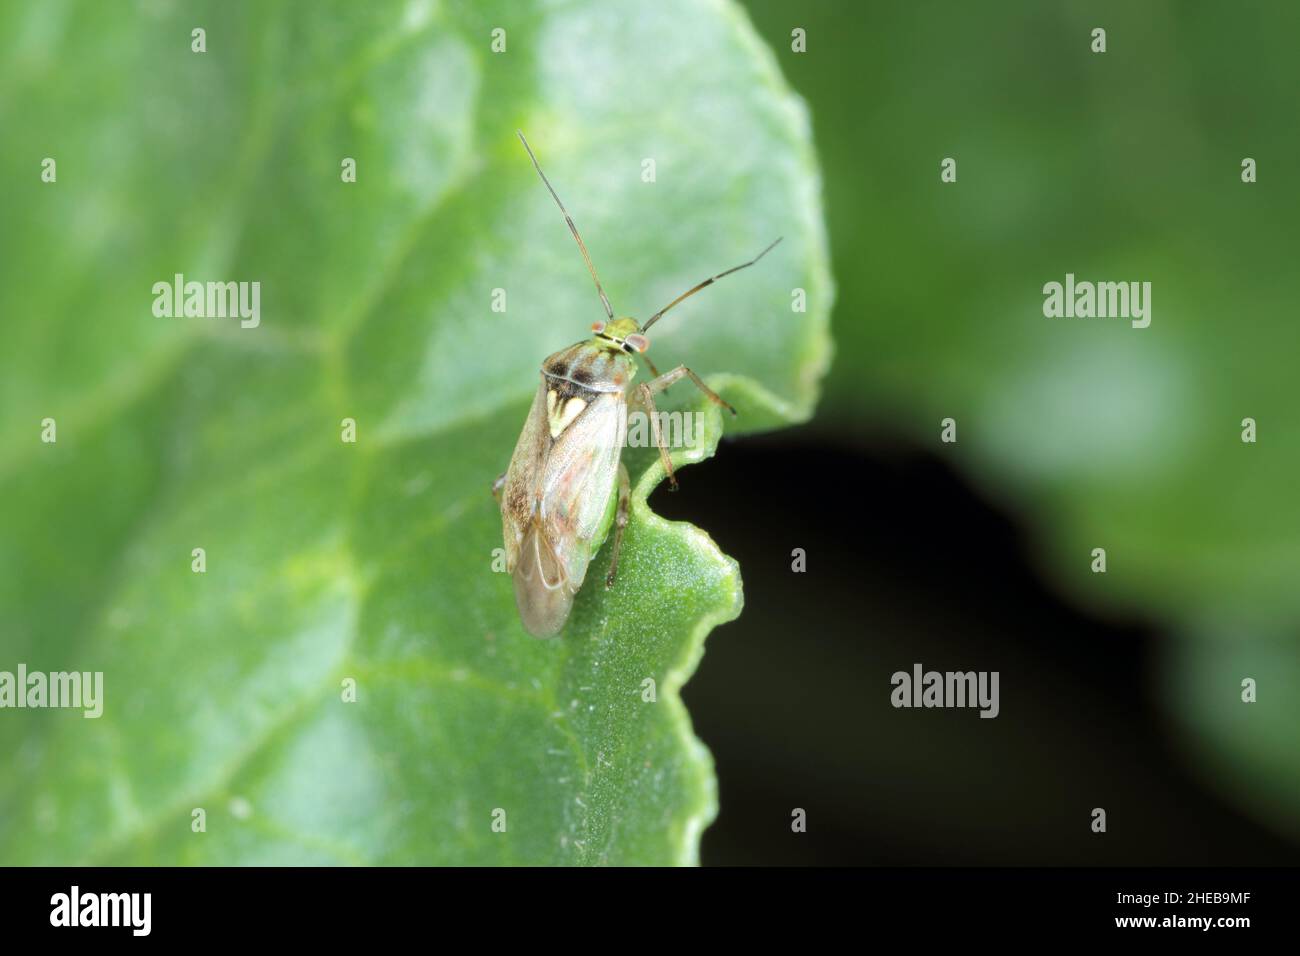 Lygus Bug bilden die Familie Miridae auf einem Rübenblatt. Stockfoto